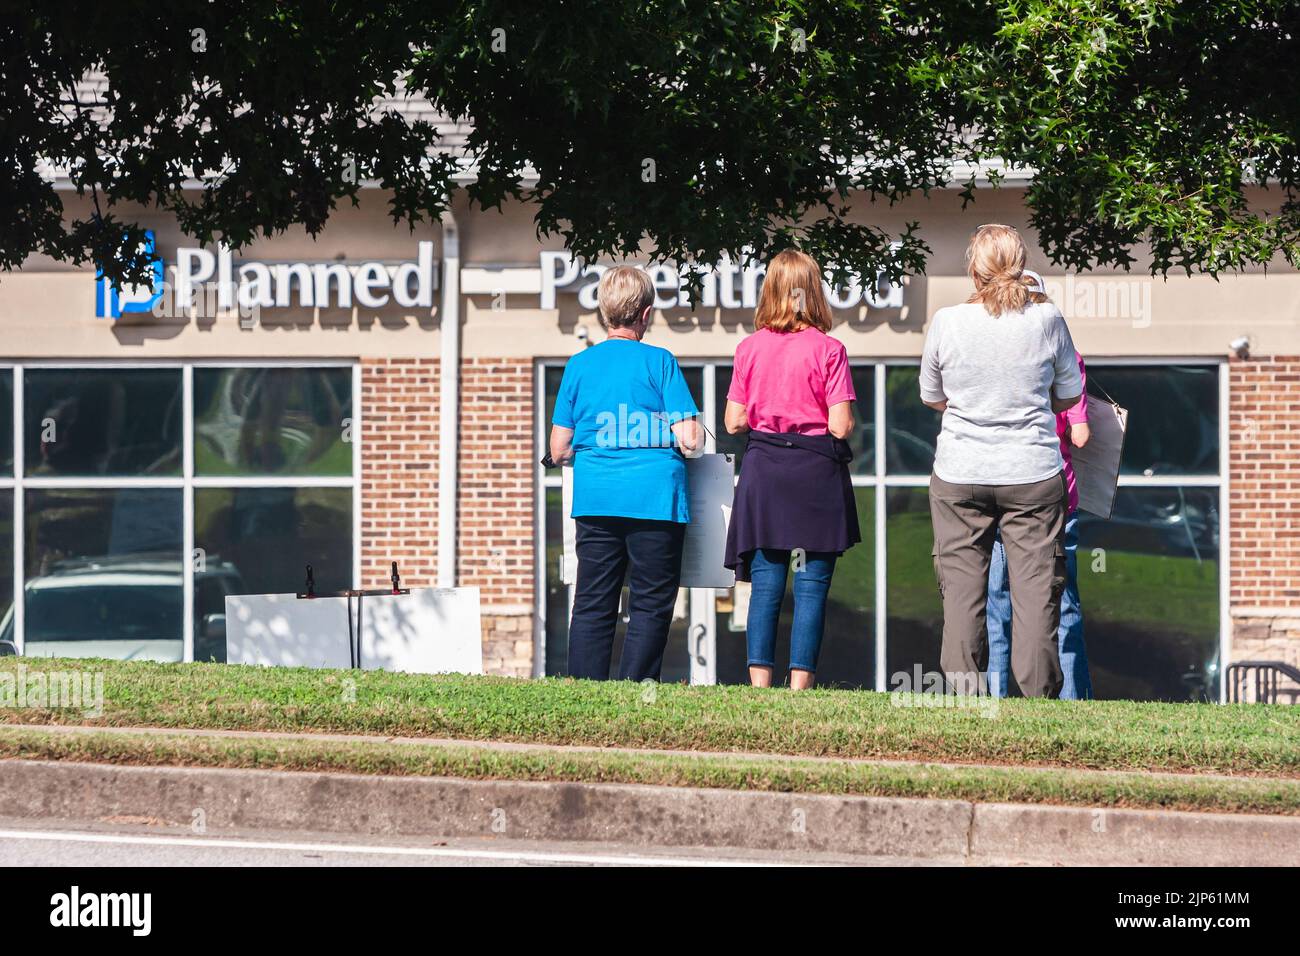 LAWRENCEVILLE, GA - 9 DE OCTUBRE: Manifestantes anti-aborto se ponen de pie y miran fijamente a una clínica de Planned Parenthood el 9 de octubre de 2021 en Lawrenceville, Foto de stock